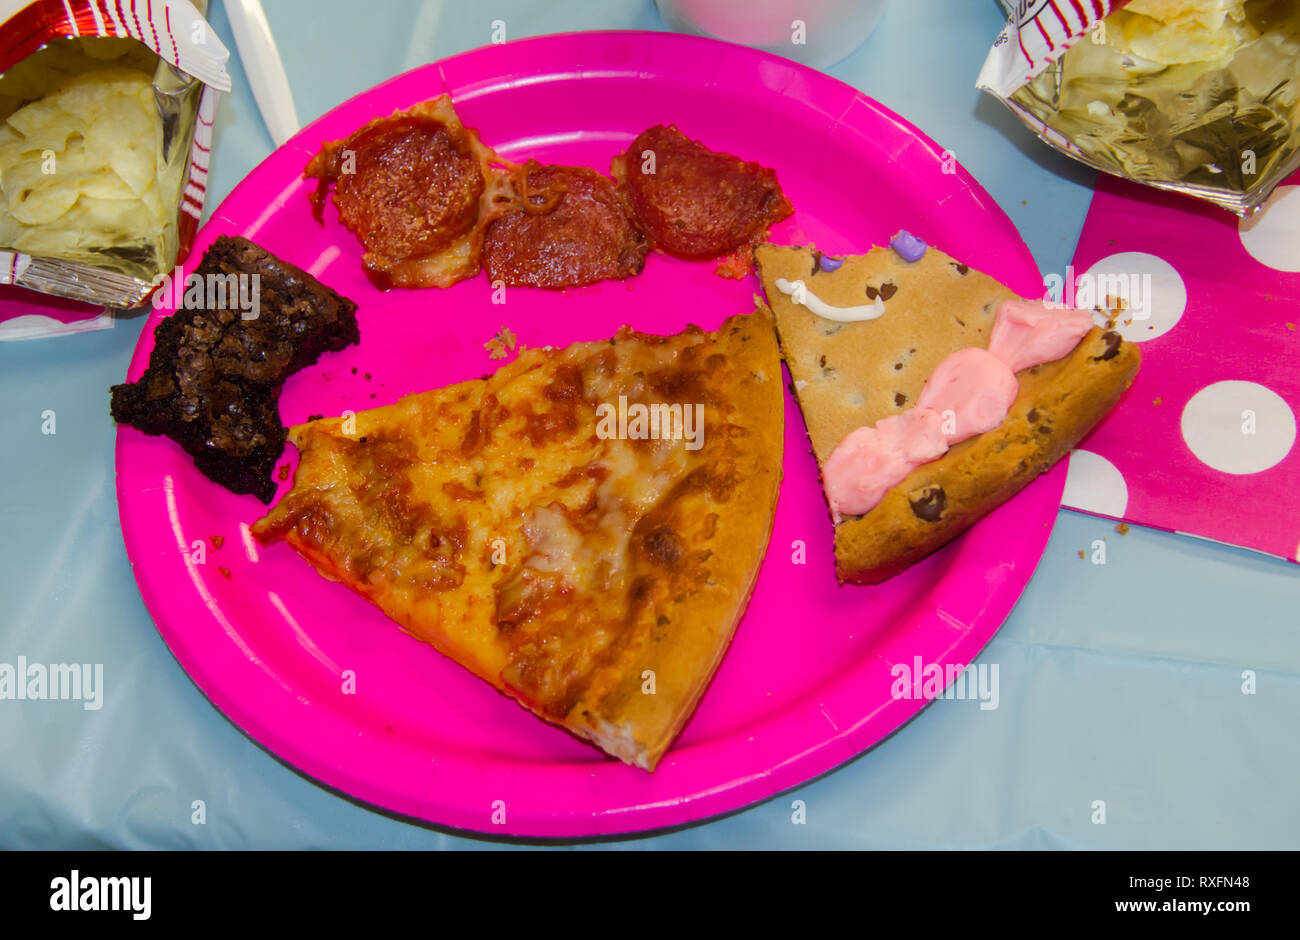 Geburtstag Essen mit einem Biss von sortierten behandelt, darunter Pizza, Chips, Kekse Kuchen und brownies. Stockfoto